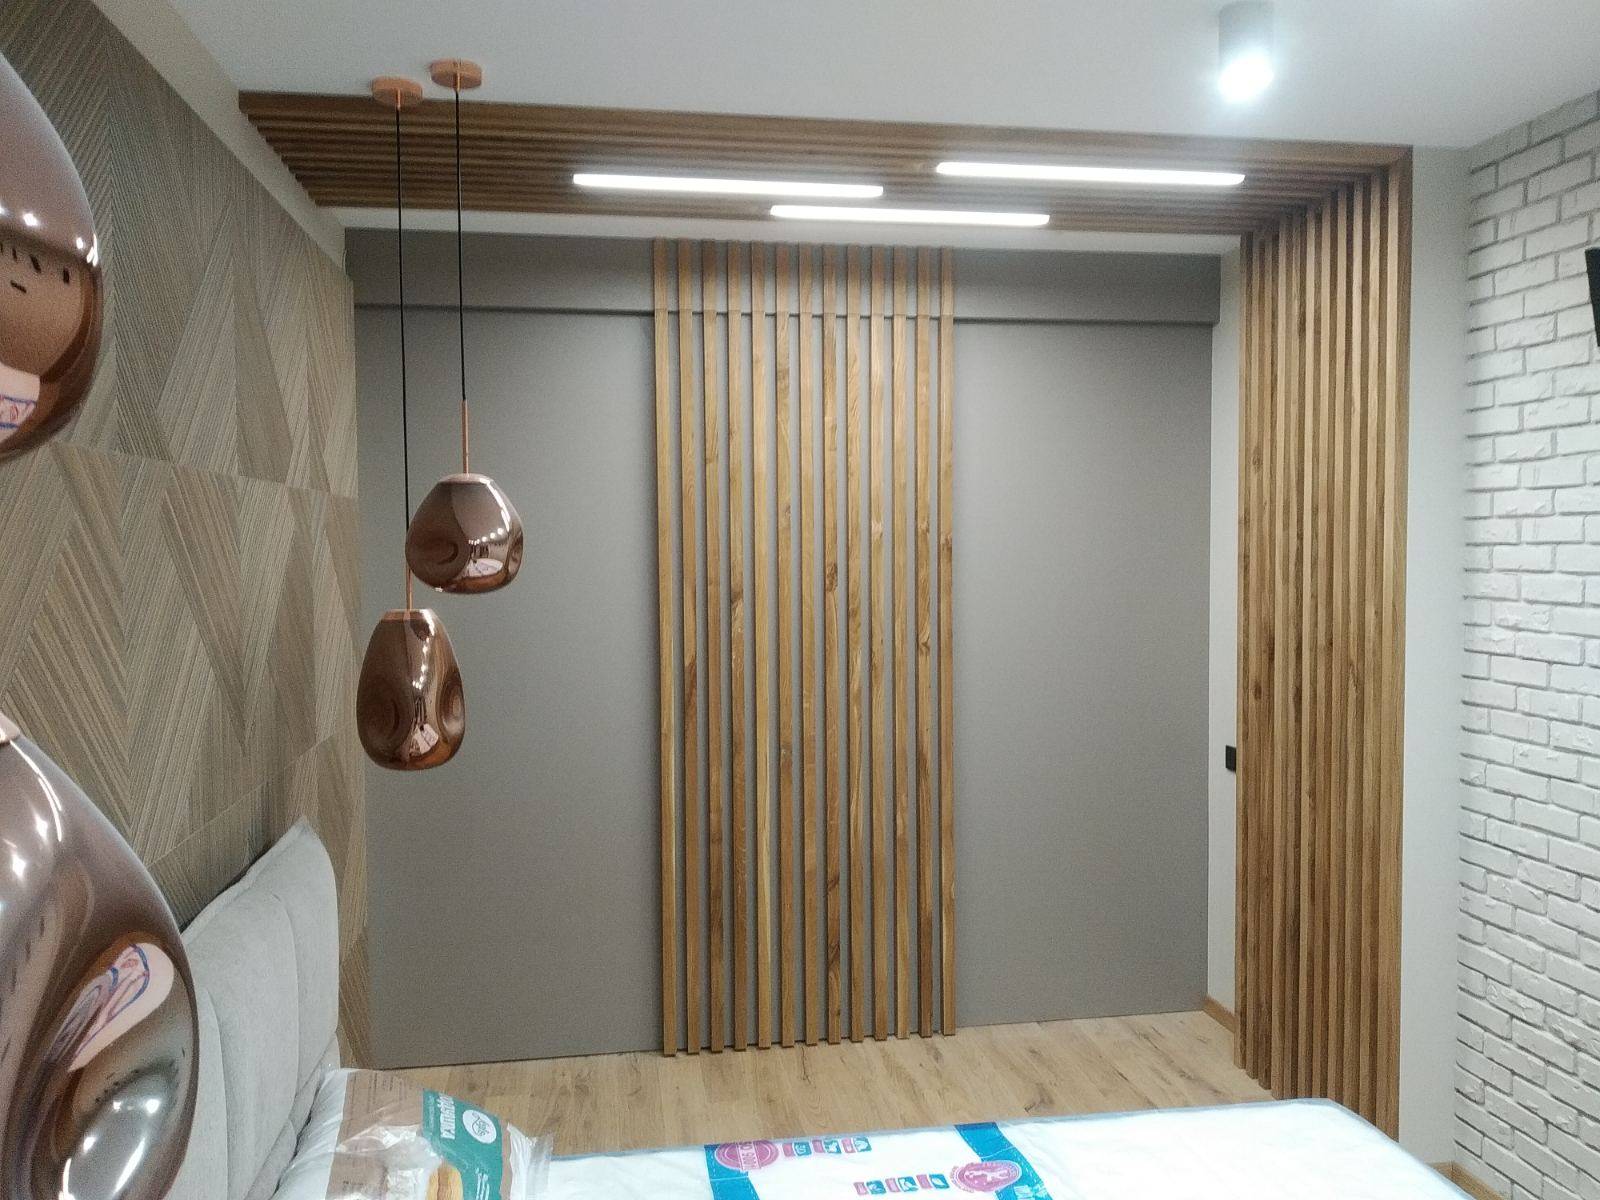 Декоративные рейки для стен в интерьере (135 фото): отделка, декор, размеры, рейки с подсветкой и без, деревянные баффели своими руками